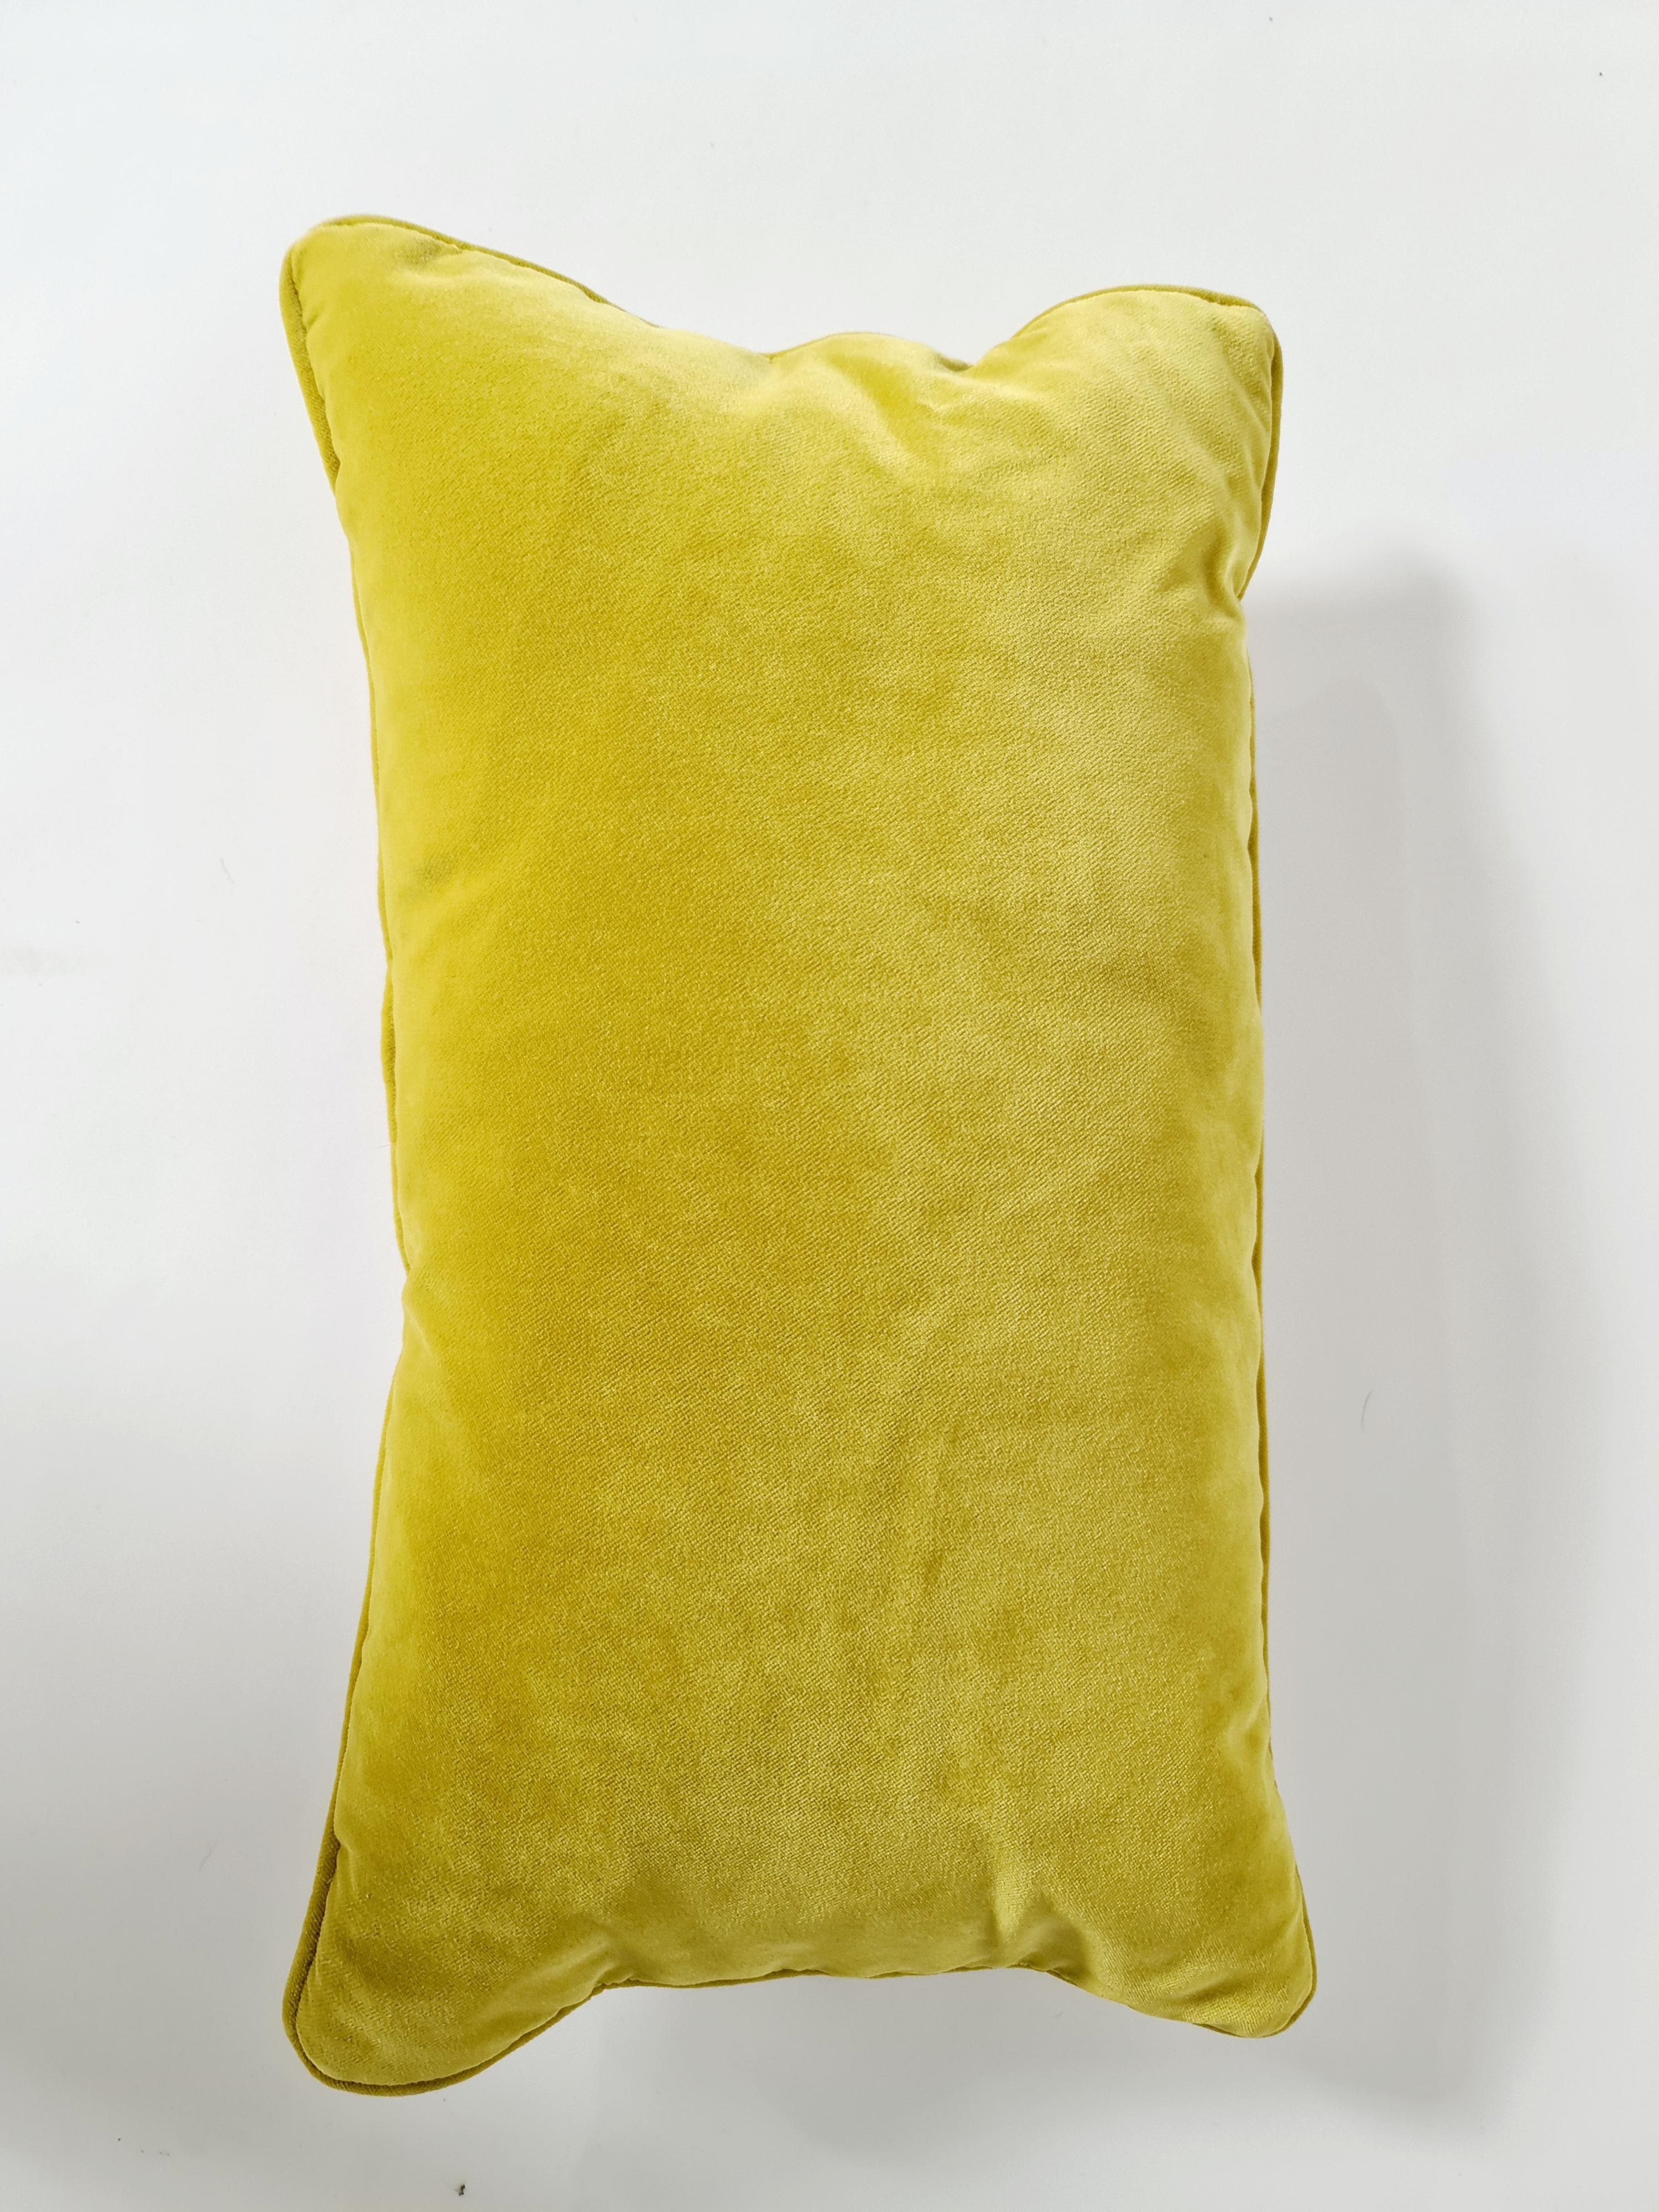 Contemporary Handmade Hermès Pillows